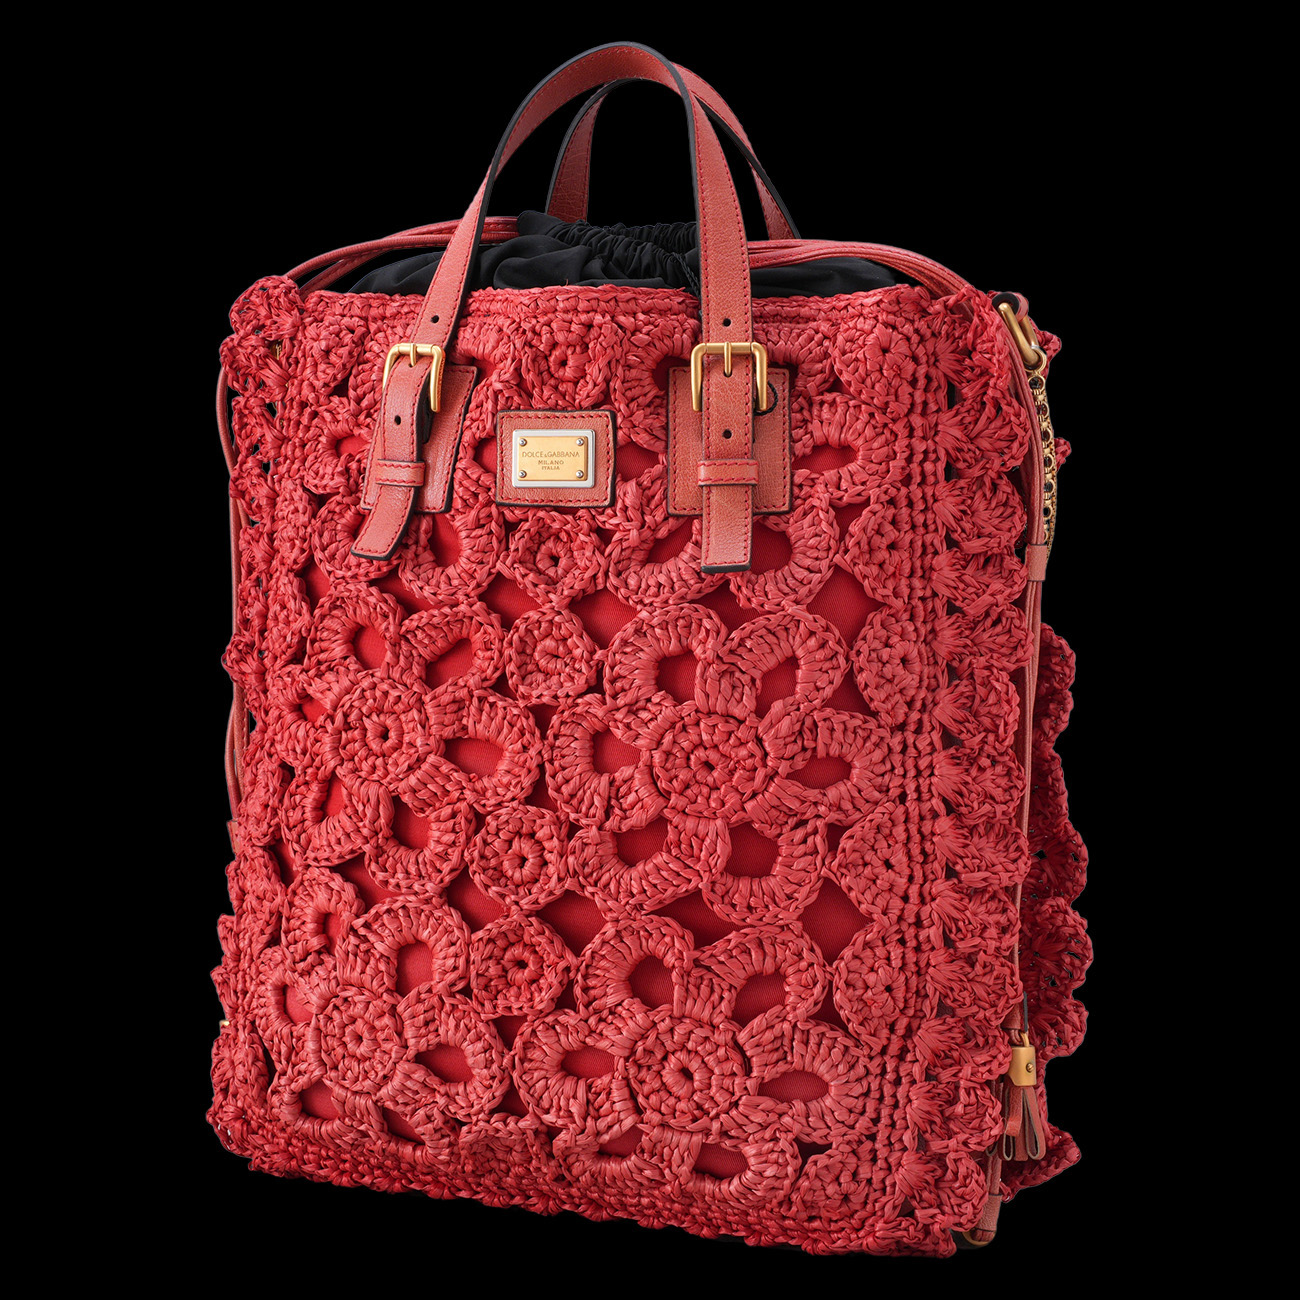 Dolce&Gabbana(USED)돌체앤가바나 플라워 패턴 토트백